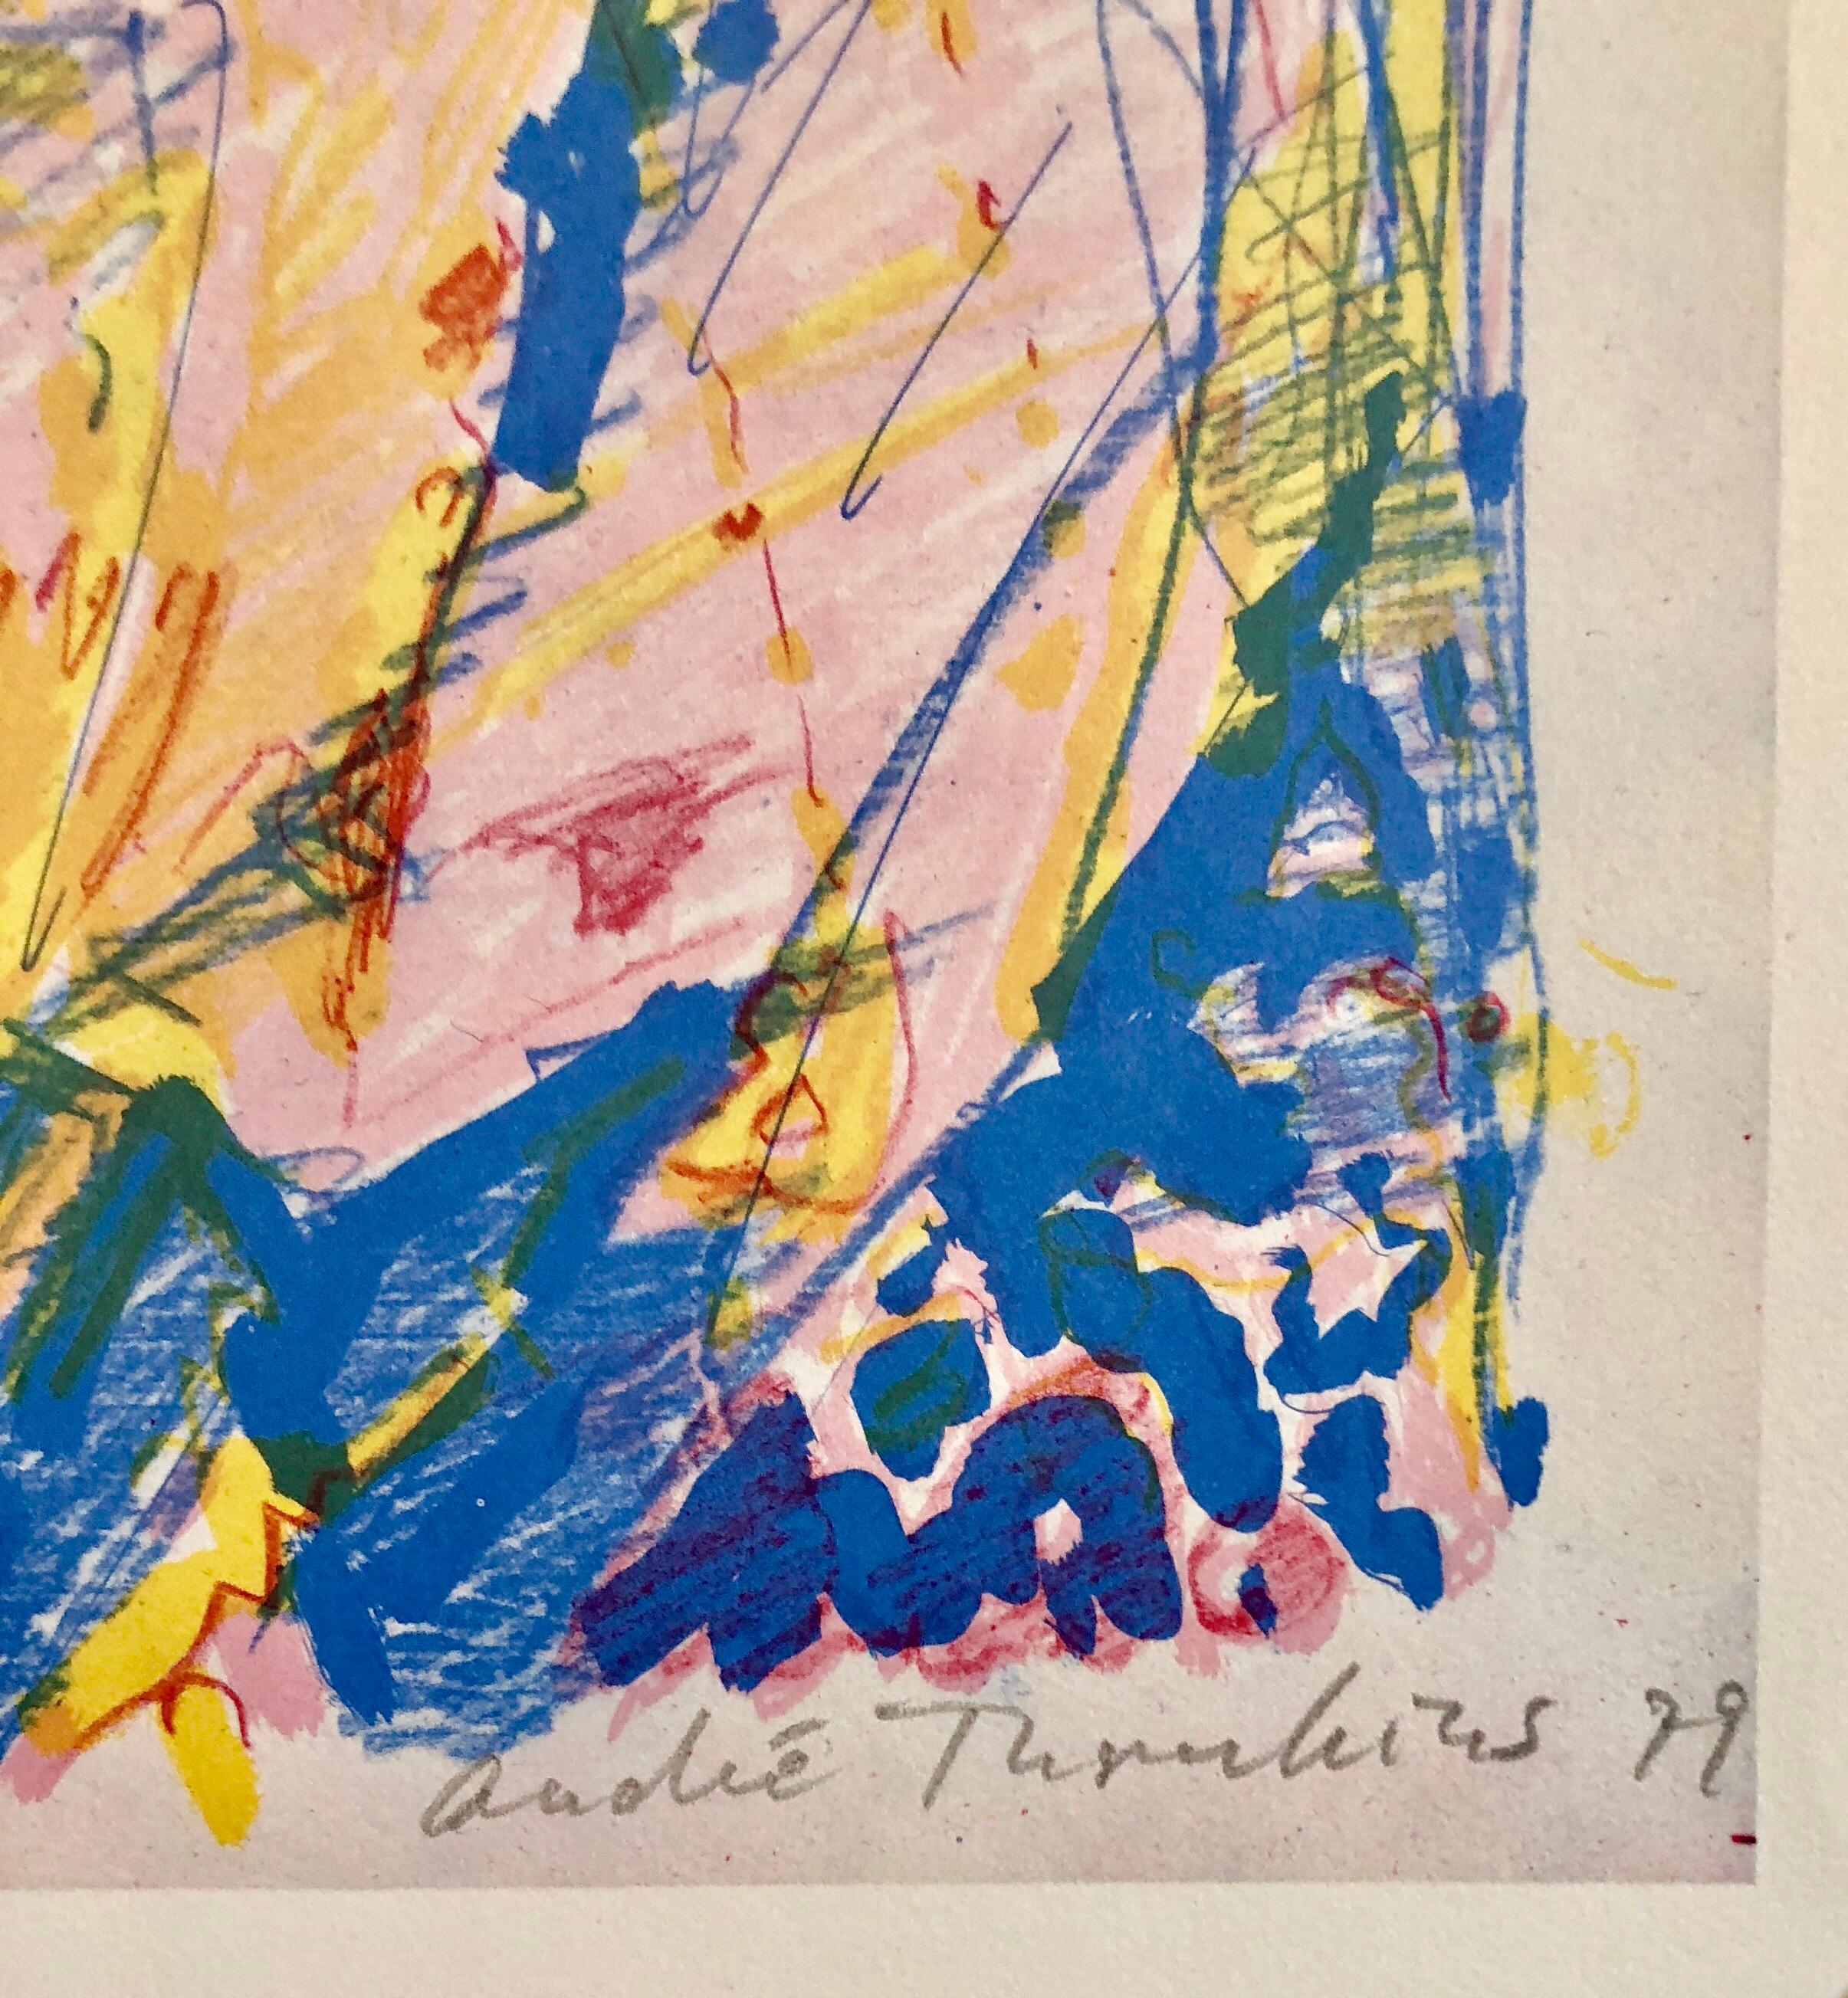 Lithographie suisse moderniste colorée des années 1970 signée Dada Andre Thomkins - Print de André Thomkins